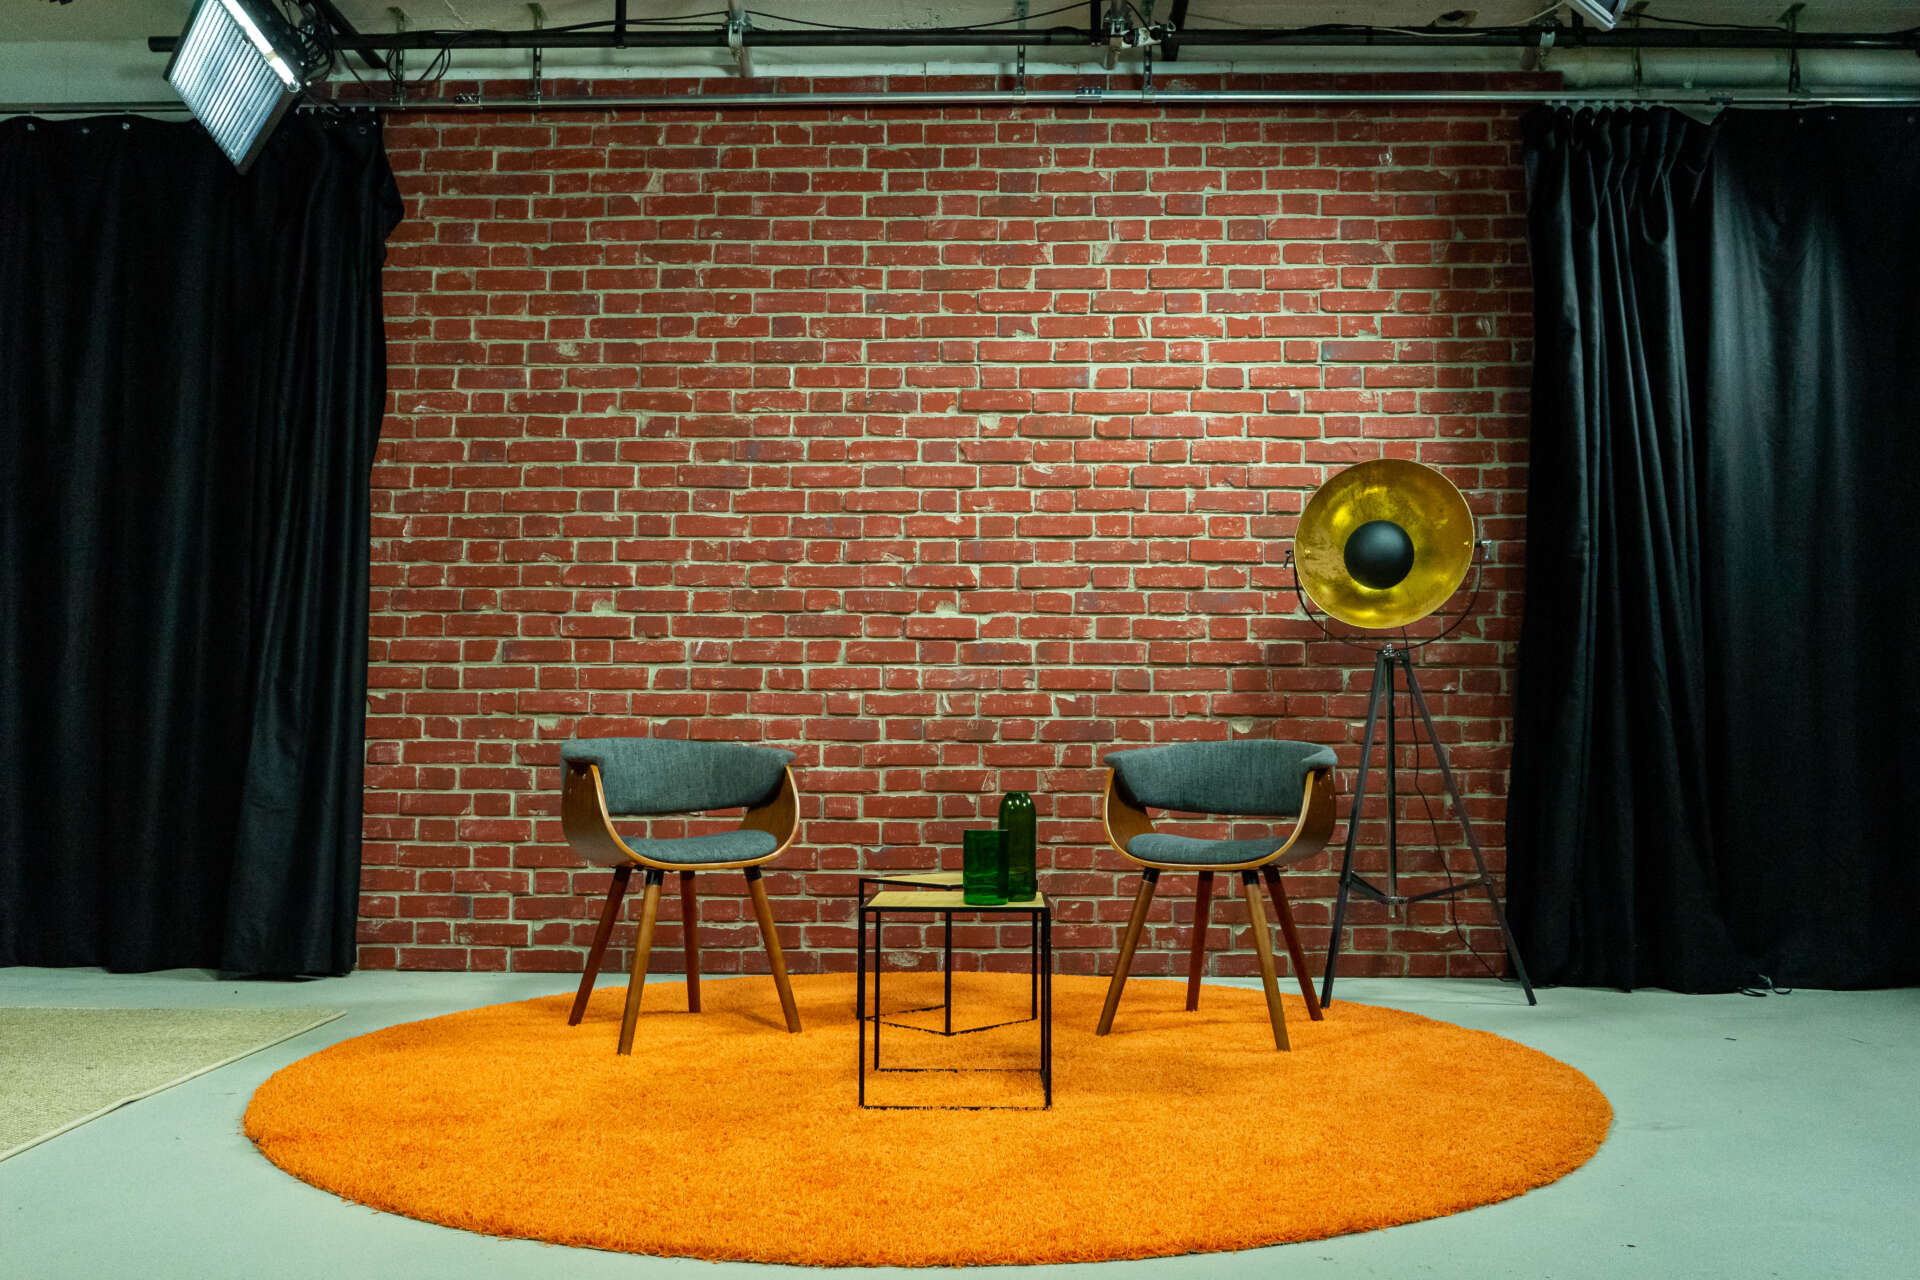 In einem Studio stehen zwei Stuehle, zwei Beistelltische und eine Lampe auf einem orangenen Teppich vor einer Ziegelwand